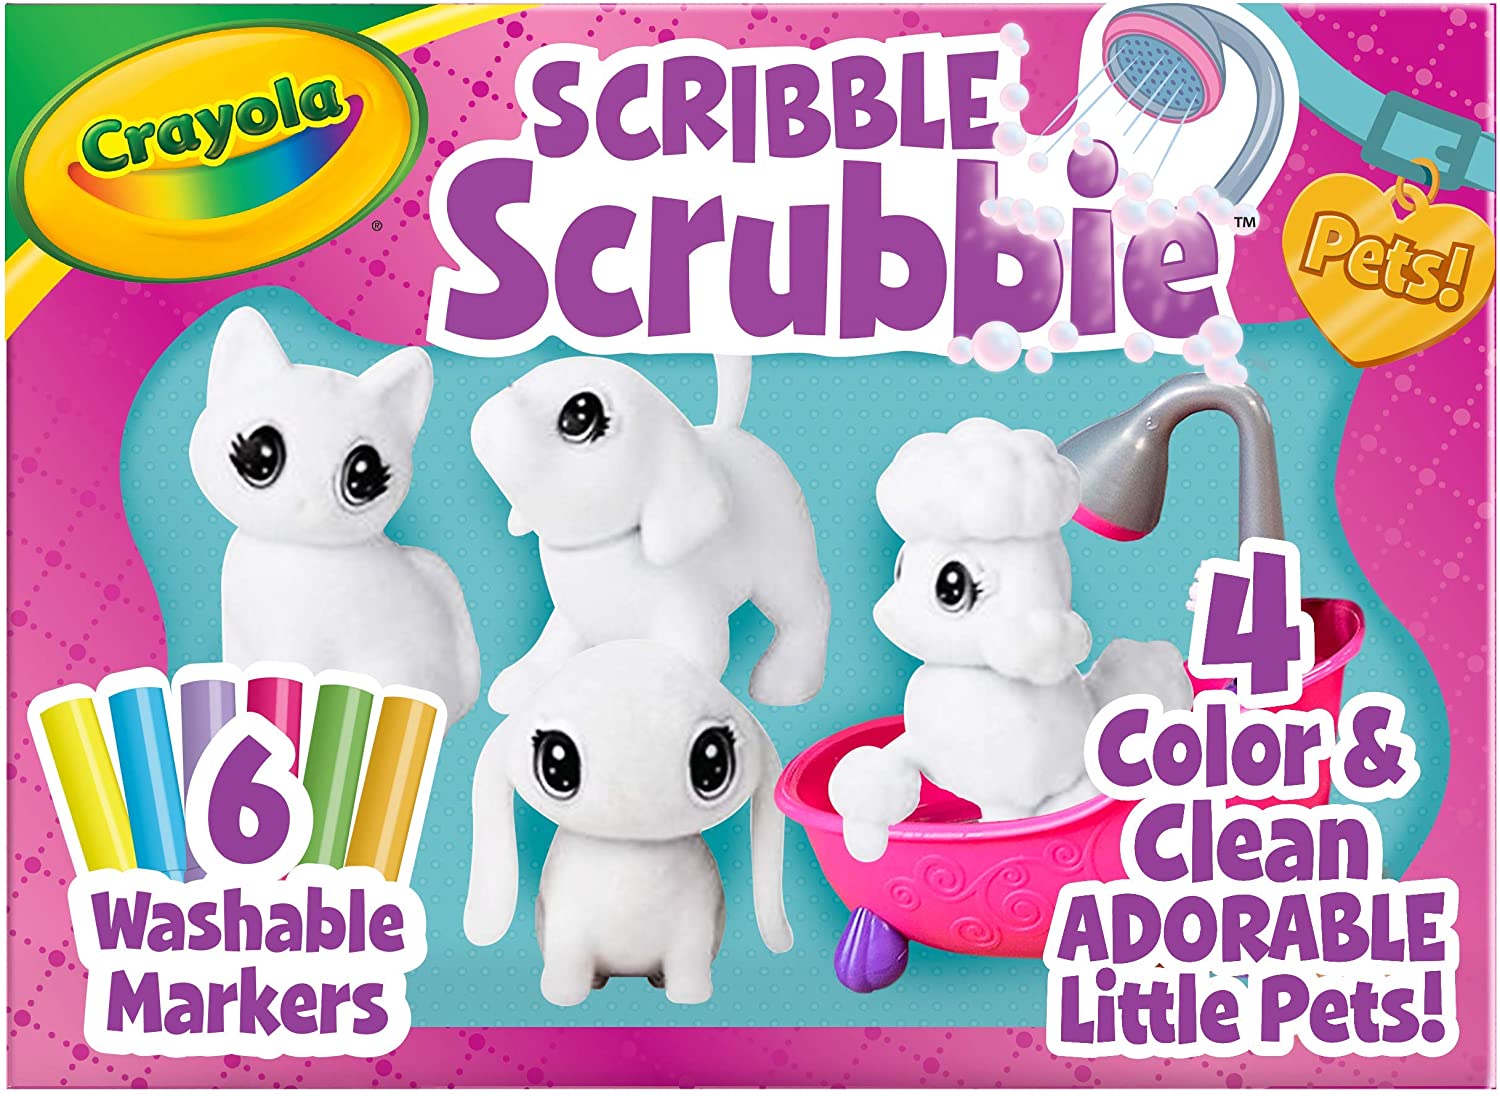 Crayola Scribble Scrubbie Pets!, Shop